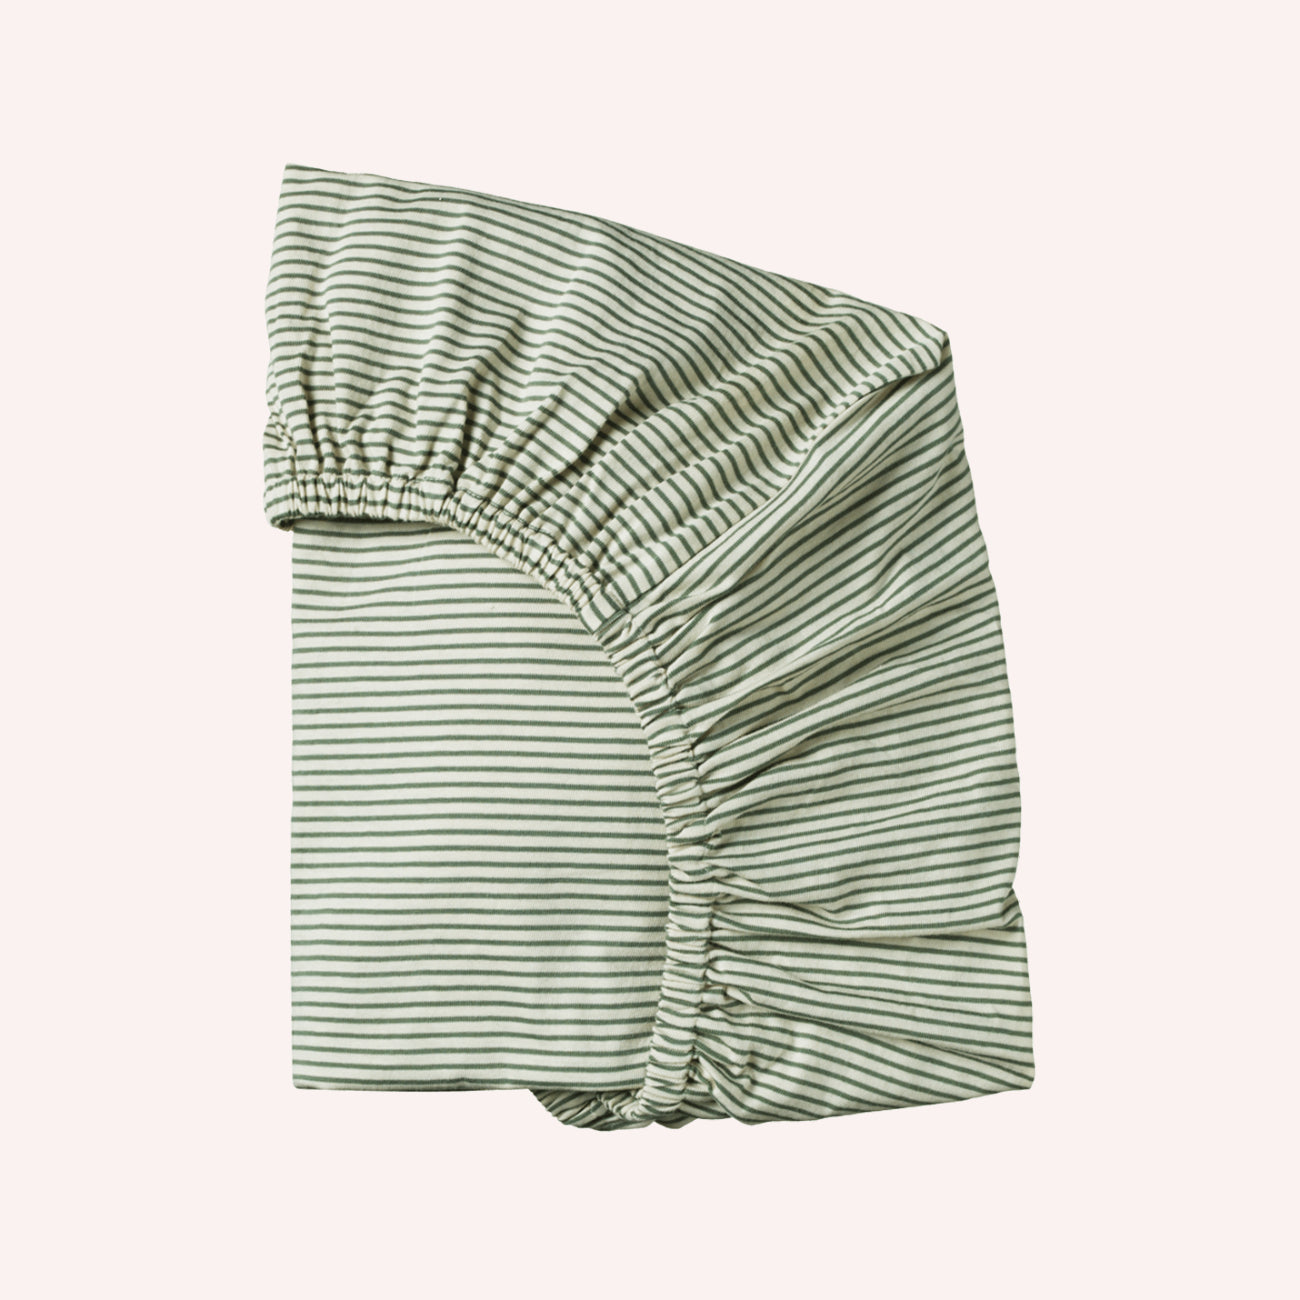 Fitted Sheet Jersey - Nettle Pinstripe